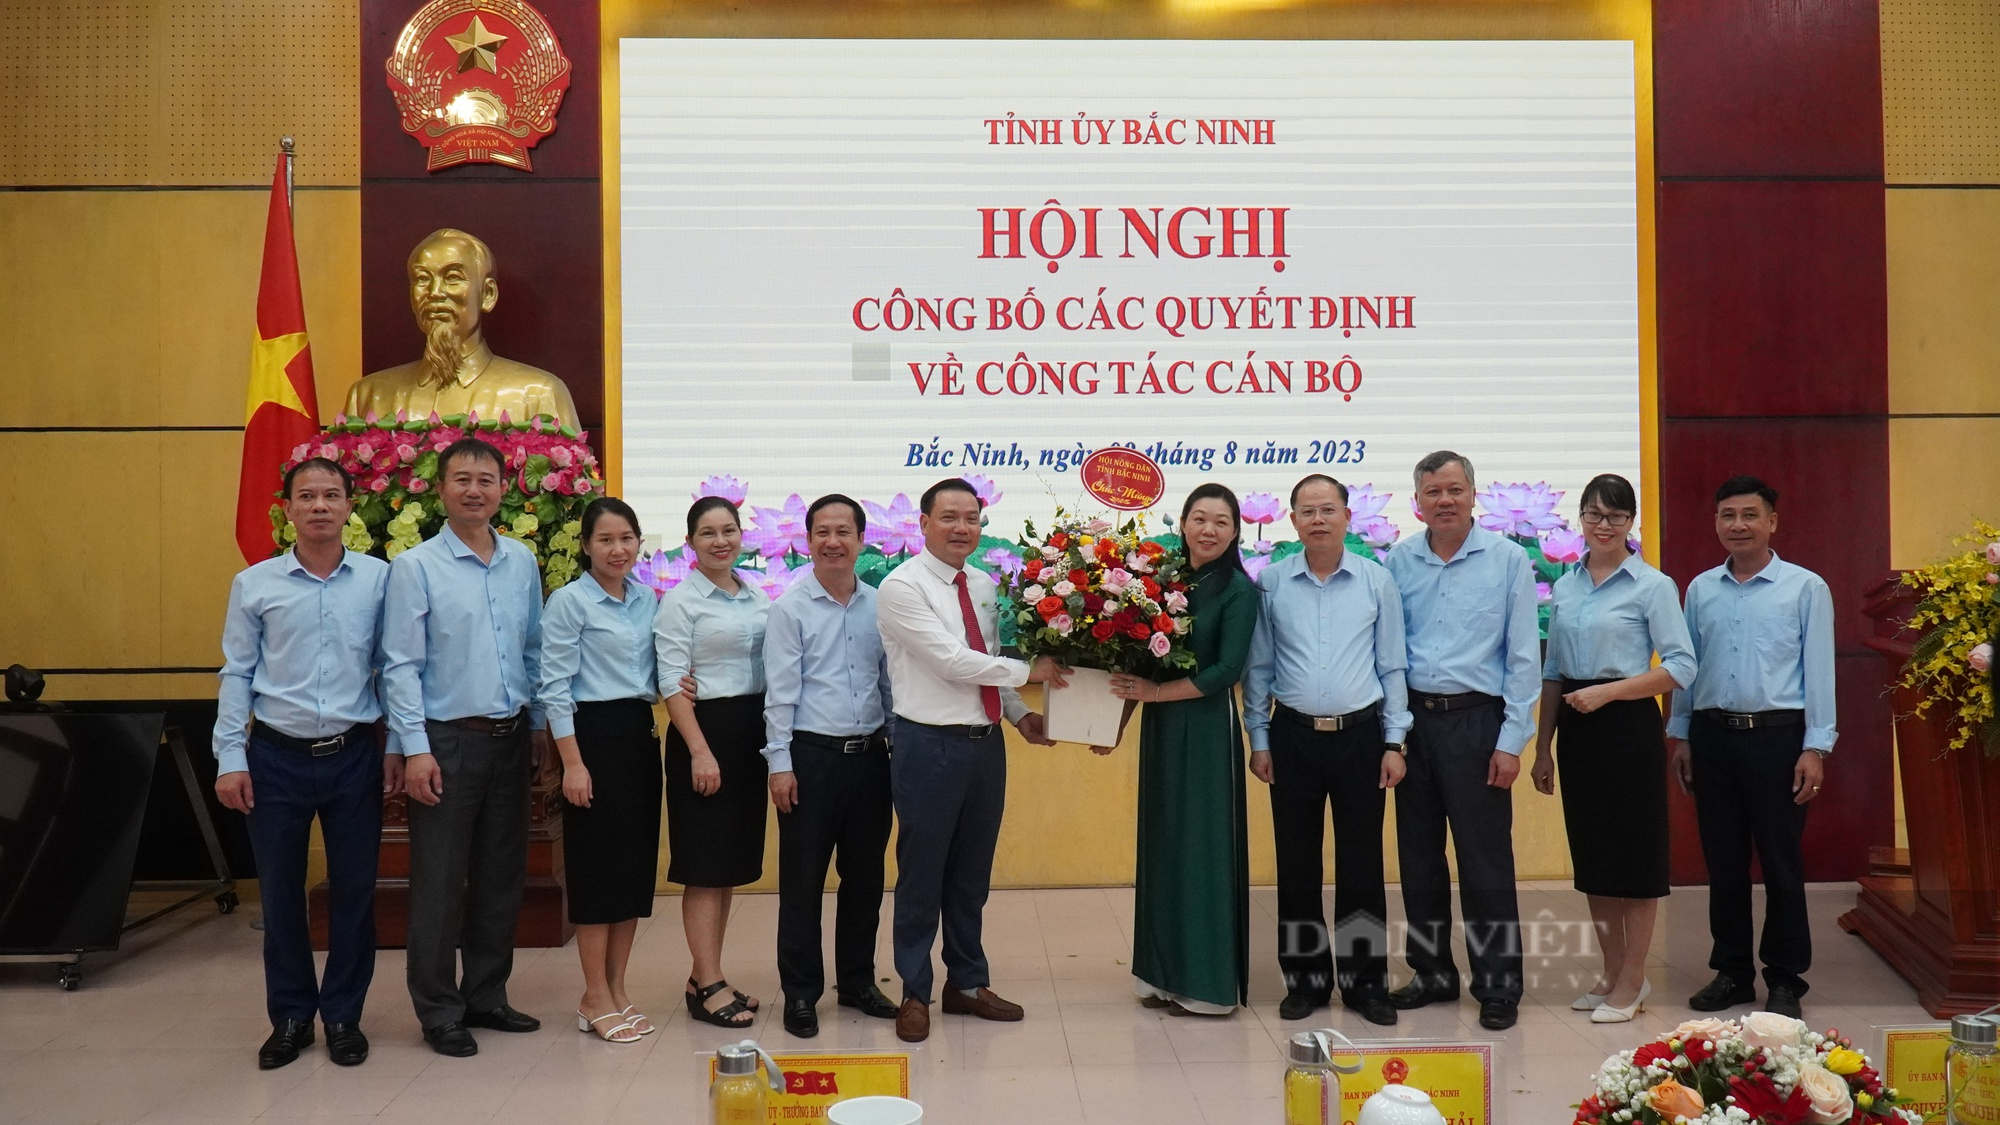 Chủ tịch Hội Nông dân tỉnh Bắc Ninh được bổ nhiệm giữ chức Giám đốc Sở Tư pháp tỉnh Bắc Ninh - Ảnh 5.